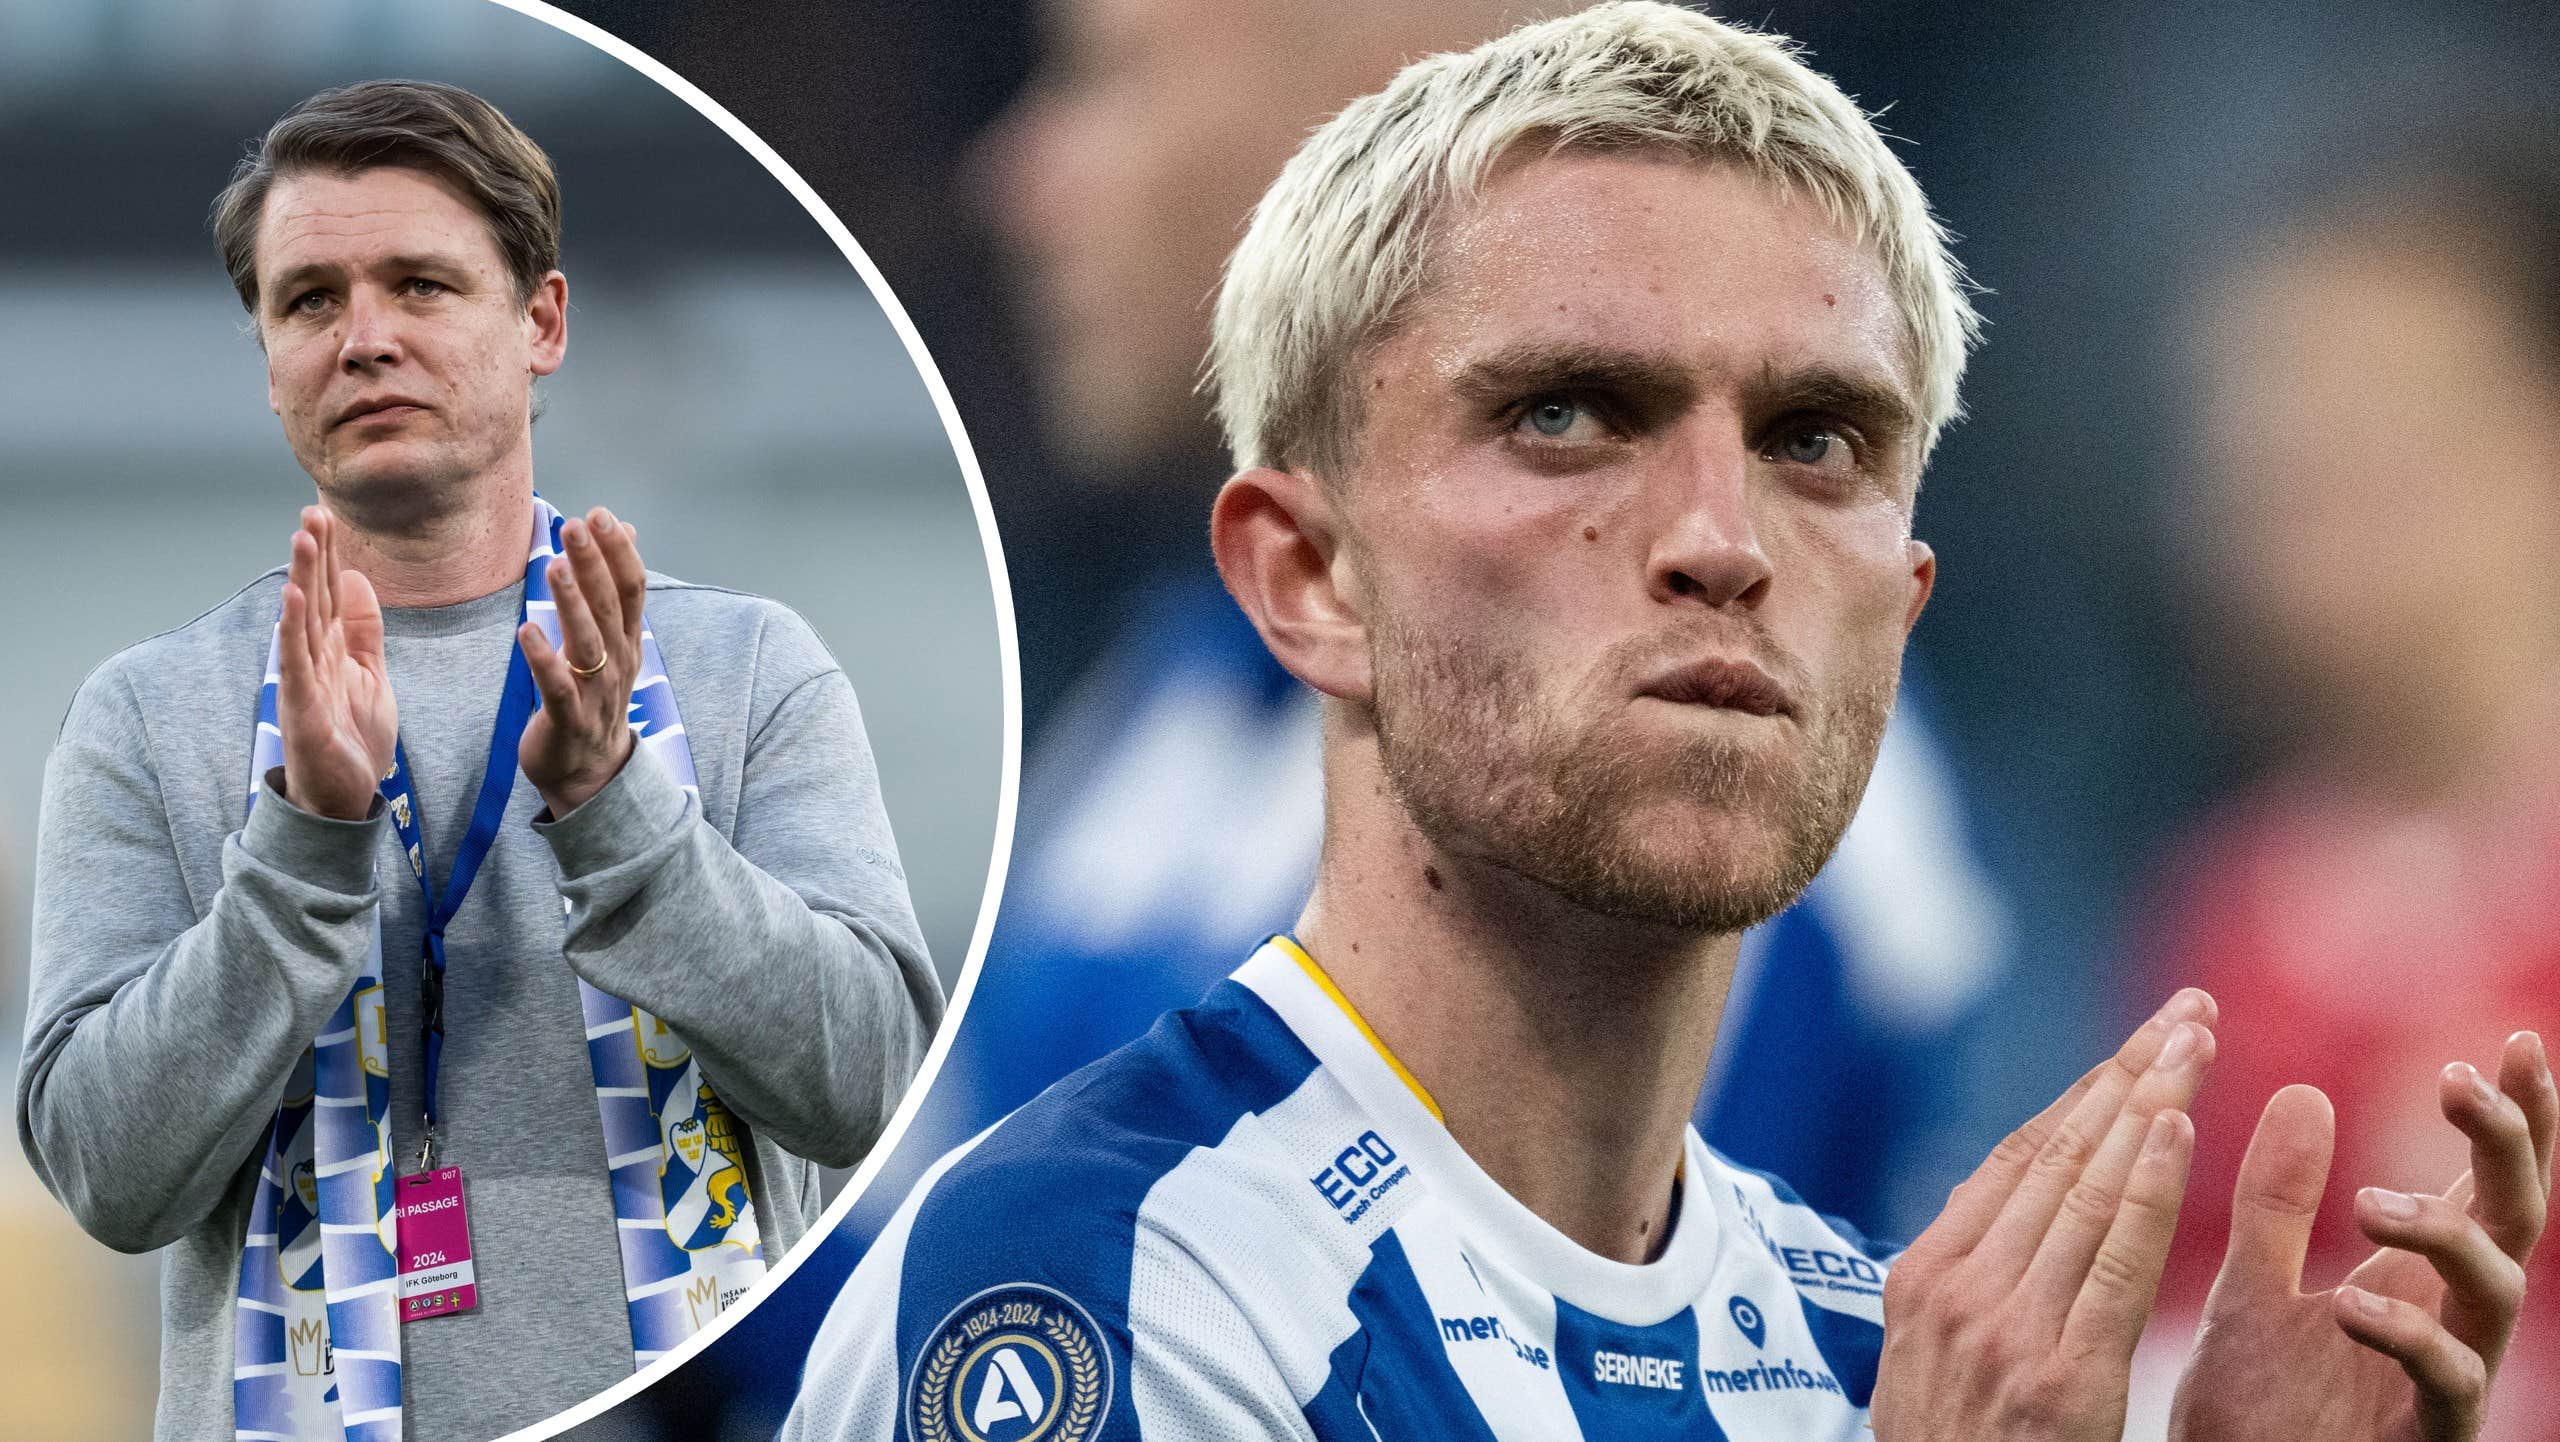 Hetast idag: Andreas Pyndt kan lämna IFK Göteborg